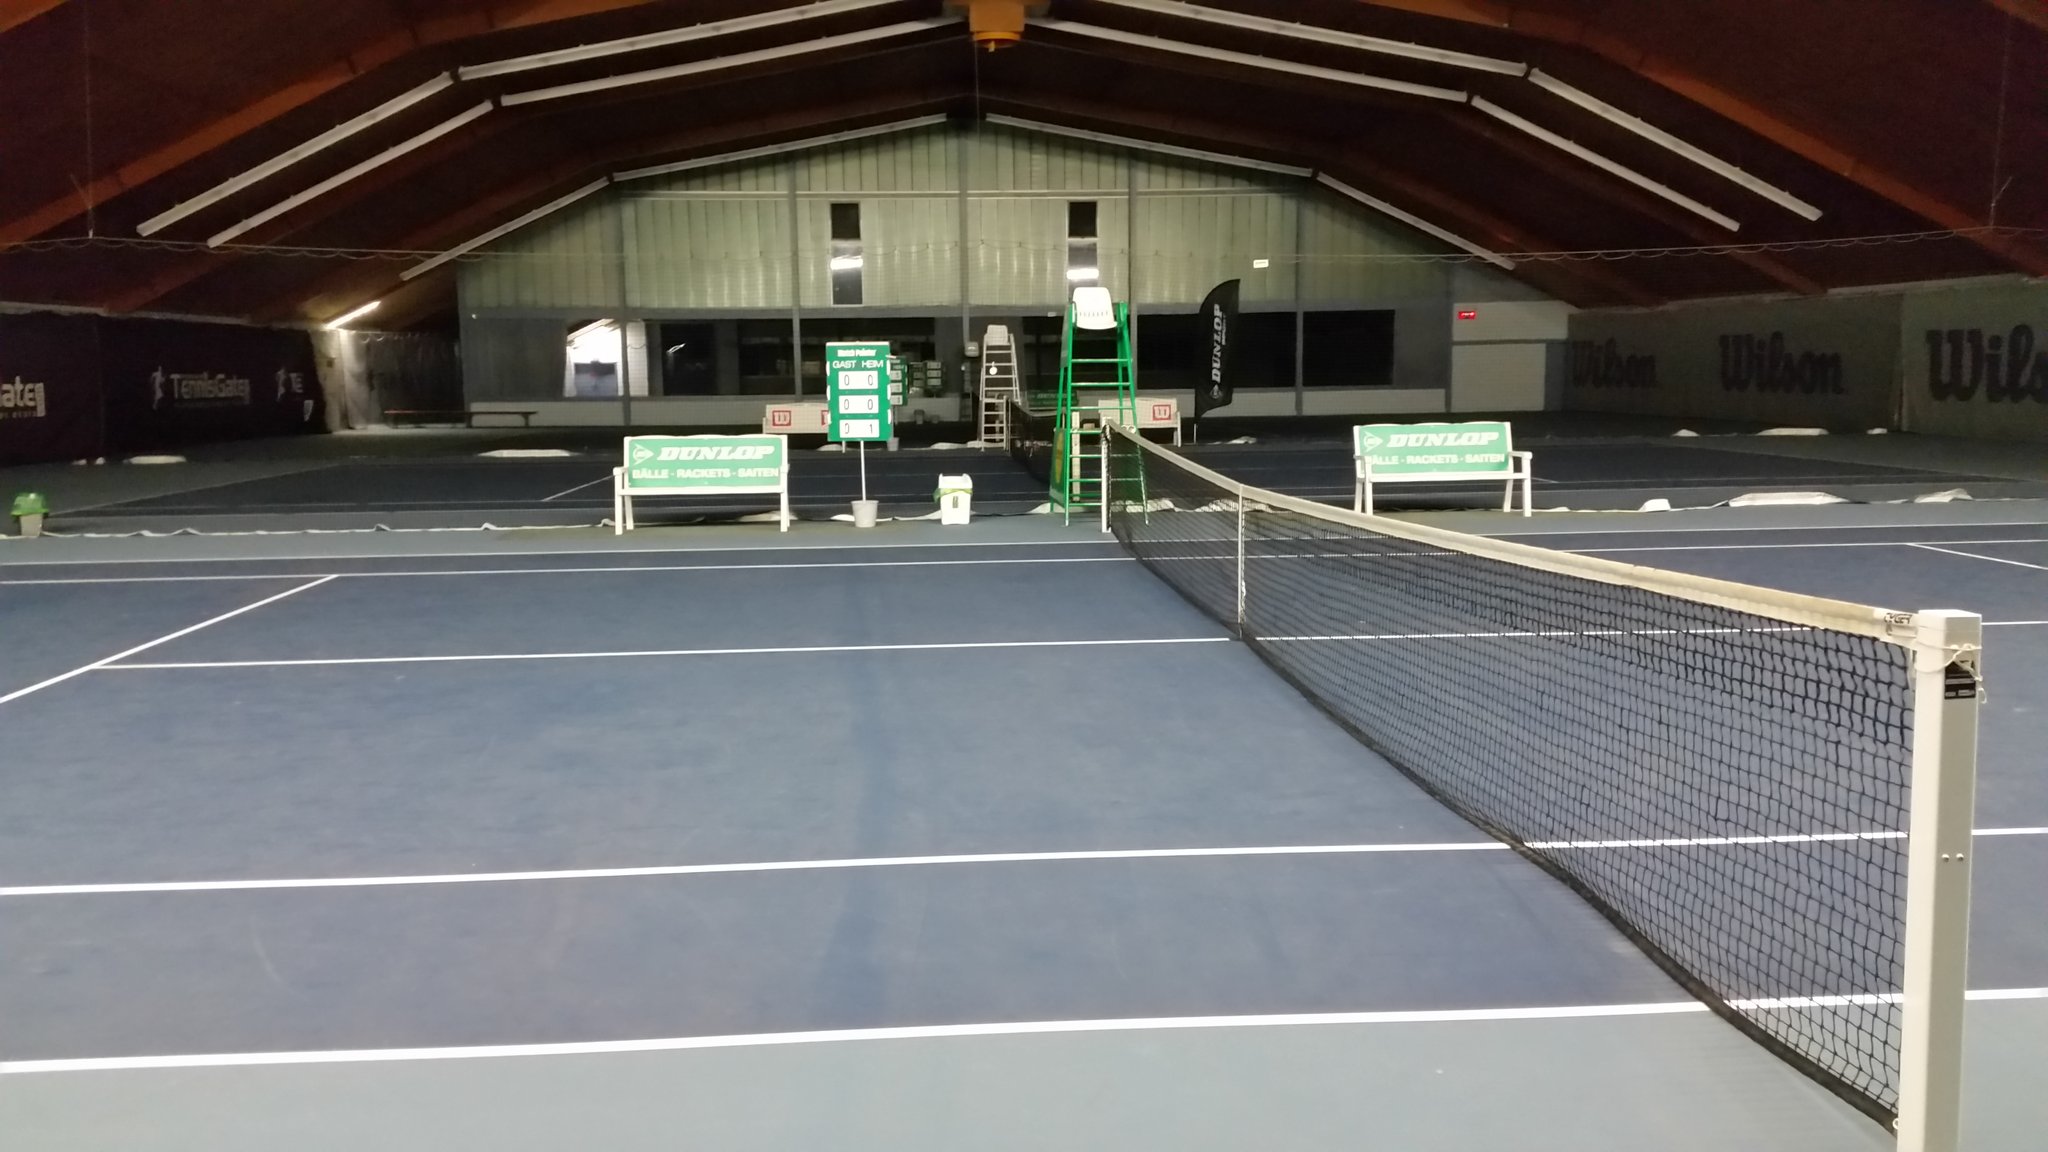 Tobias Wuth on Twitter: "Tag 1 im #Landes-Leistungszentrum in #Leimen auf  dem Weg zum #Tennis #Trainer. #DTB_Tennis #BAD 🎾🎓  https://t.co/VmCINGUs1n" / Twitter